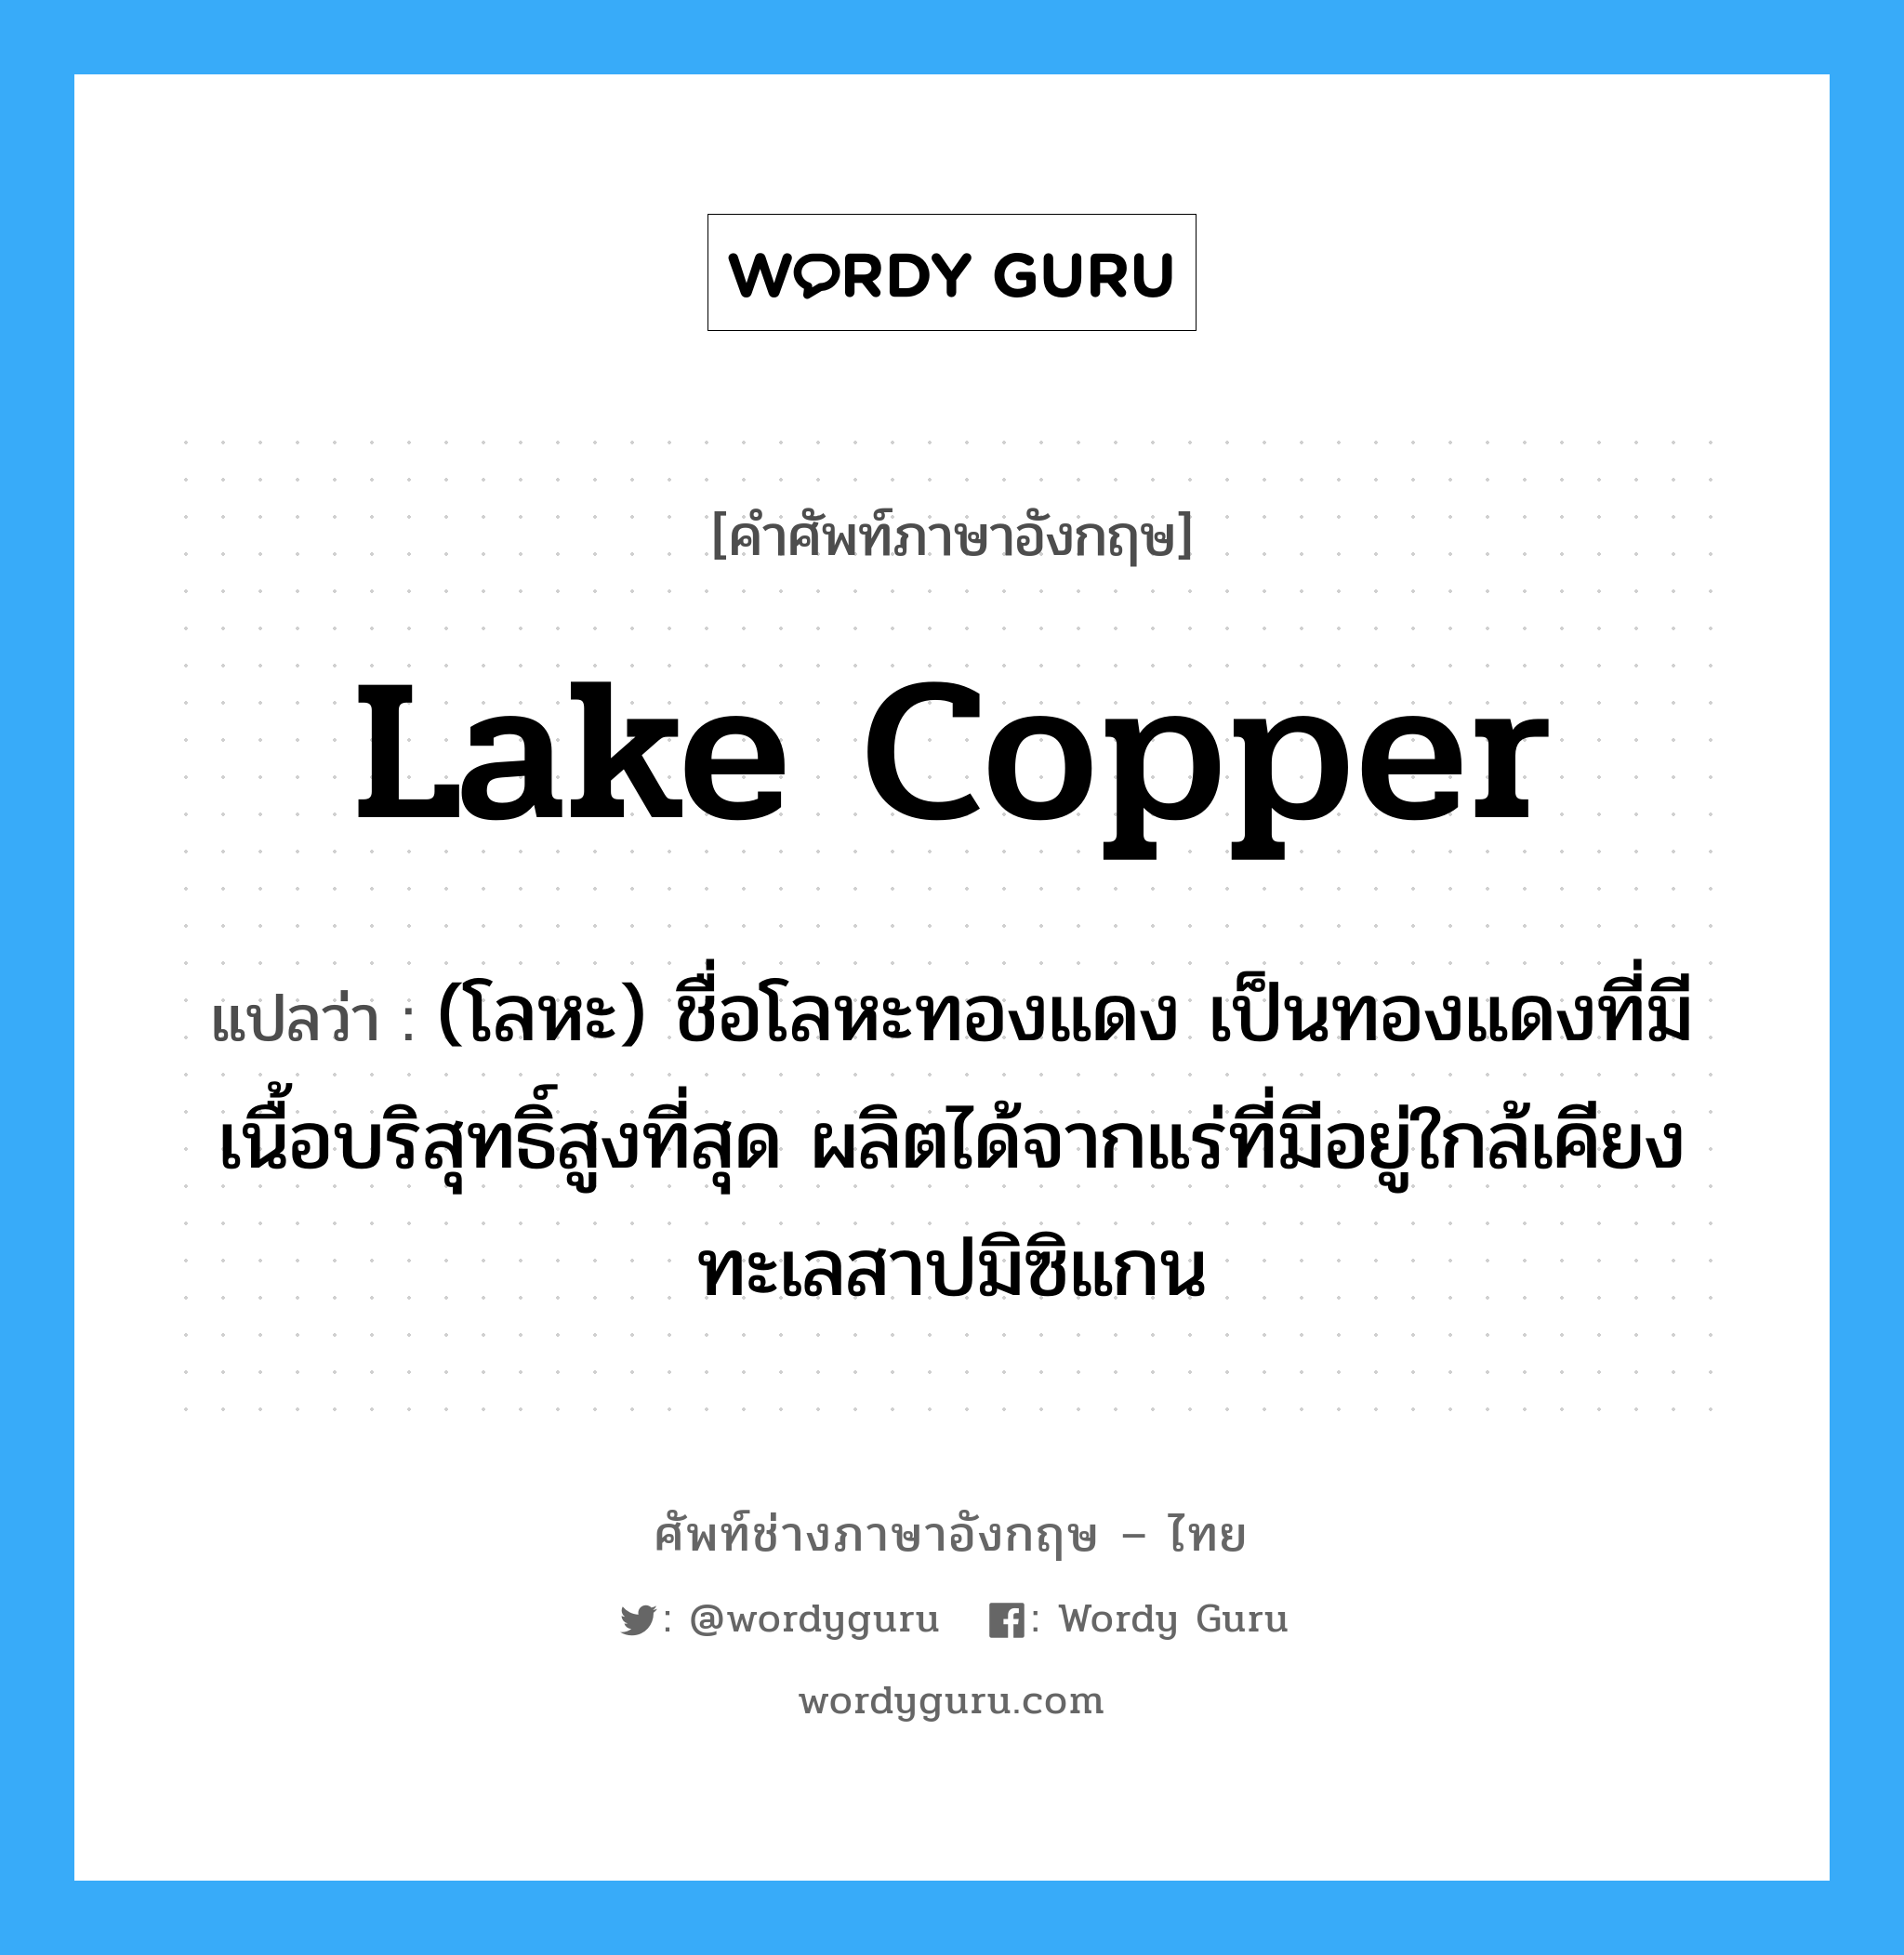 lake copper แปลว่า?, คำศัพท์ช่างภาษาอังกฤษ - ไทย lake copper คำศัพท์ภาษาอังกฤษ lake copper แปลว่า (โลหะ) ชื่อโลหะทองแดง เป็นทองแดงที่มีเนื้อบริสุทธิ์สูงที่สุด ผลิตได้จากแร่ที่มีอยู่ใกล้เคียง ทะเลสาปมิซิแกน